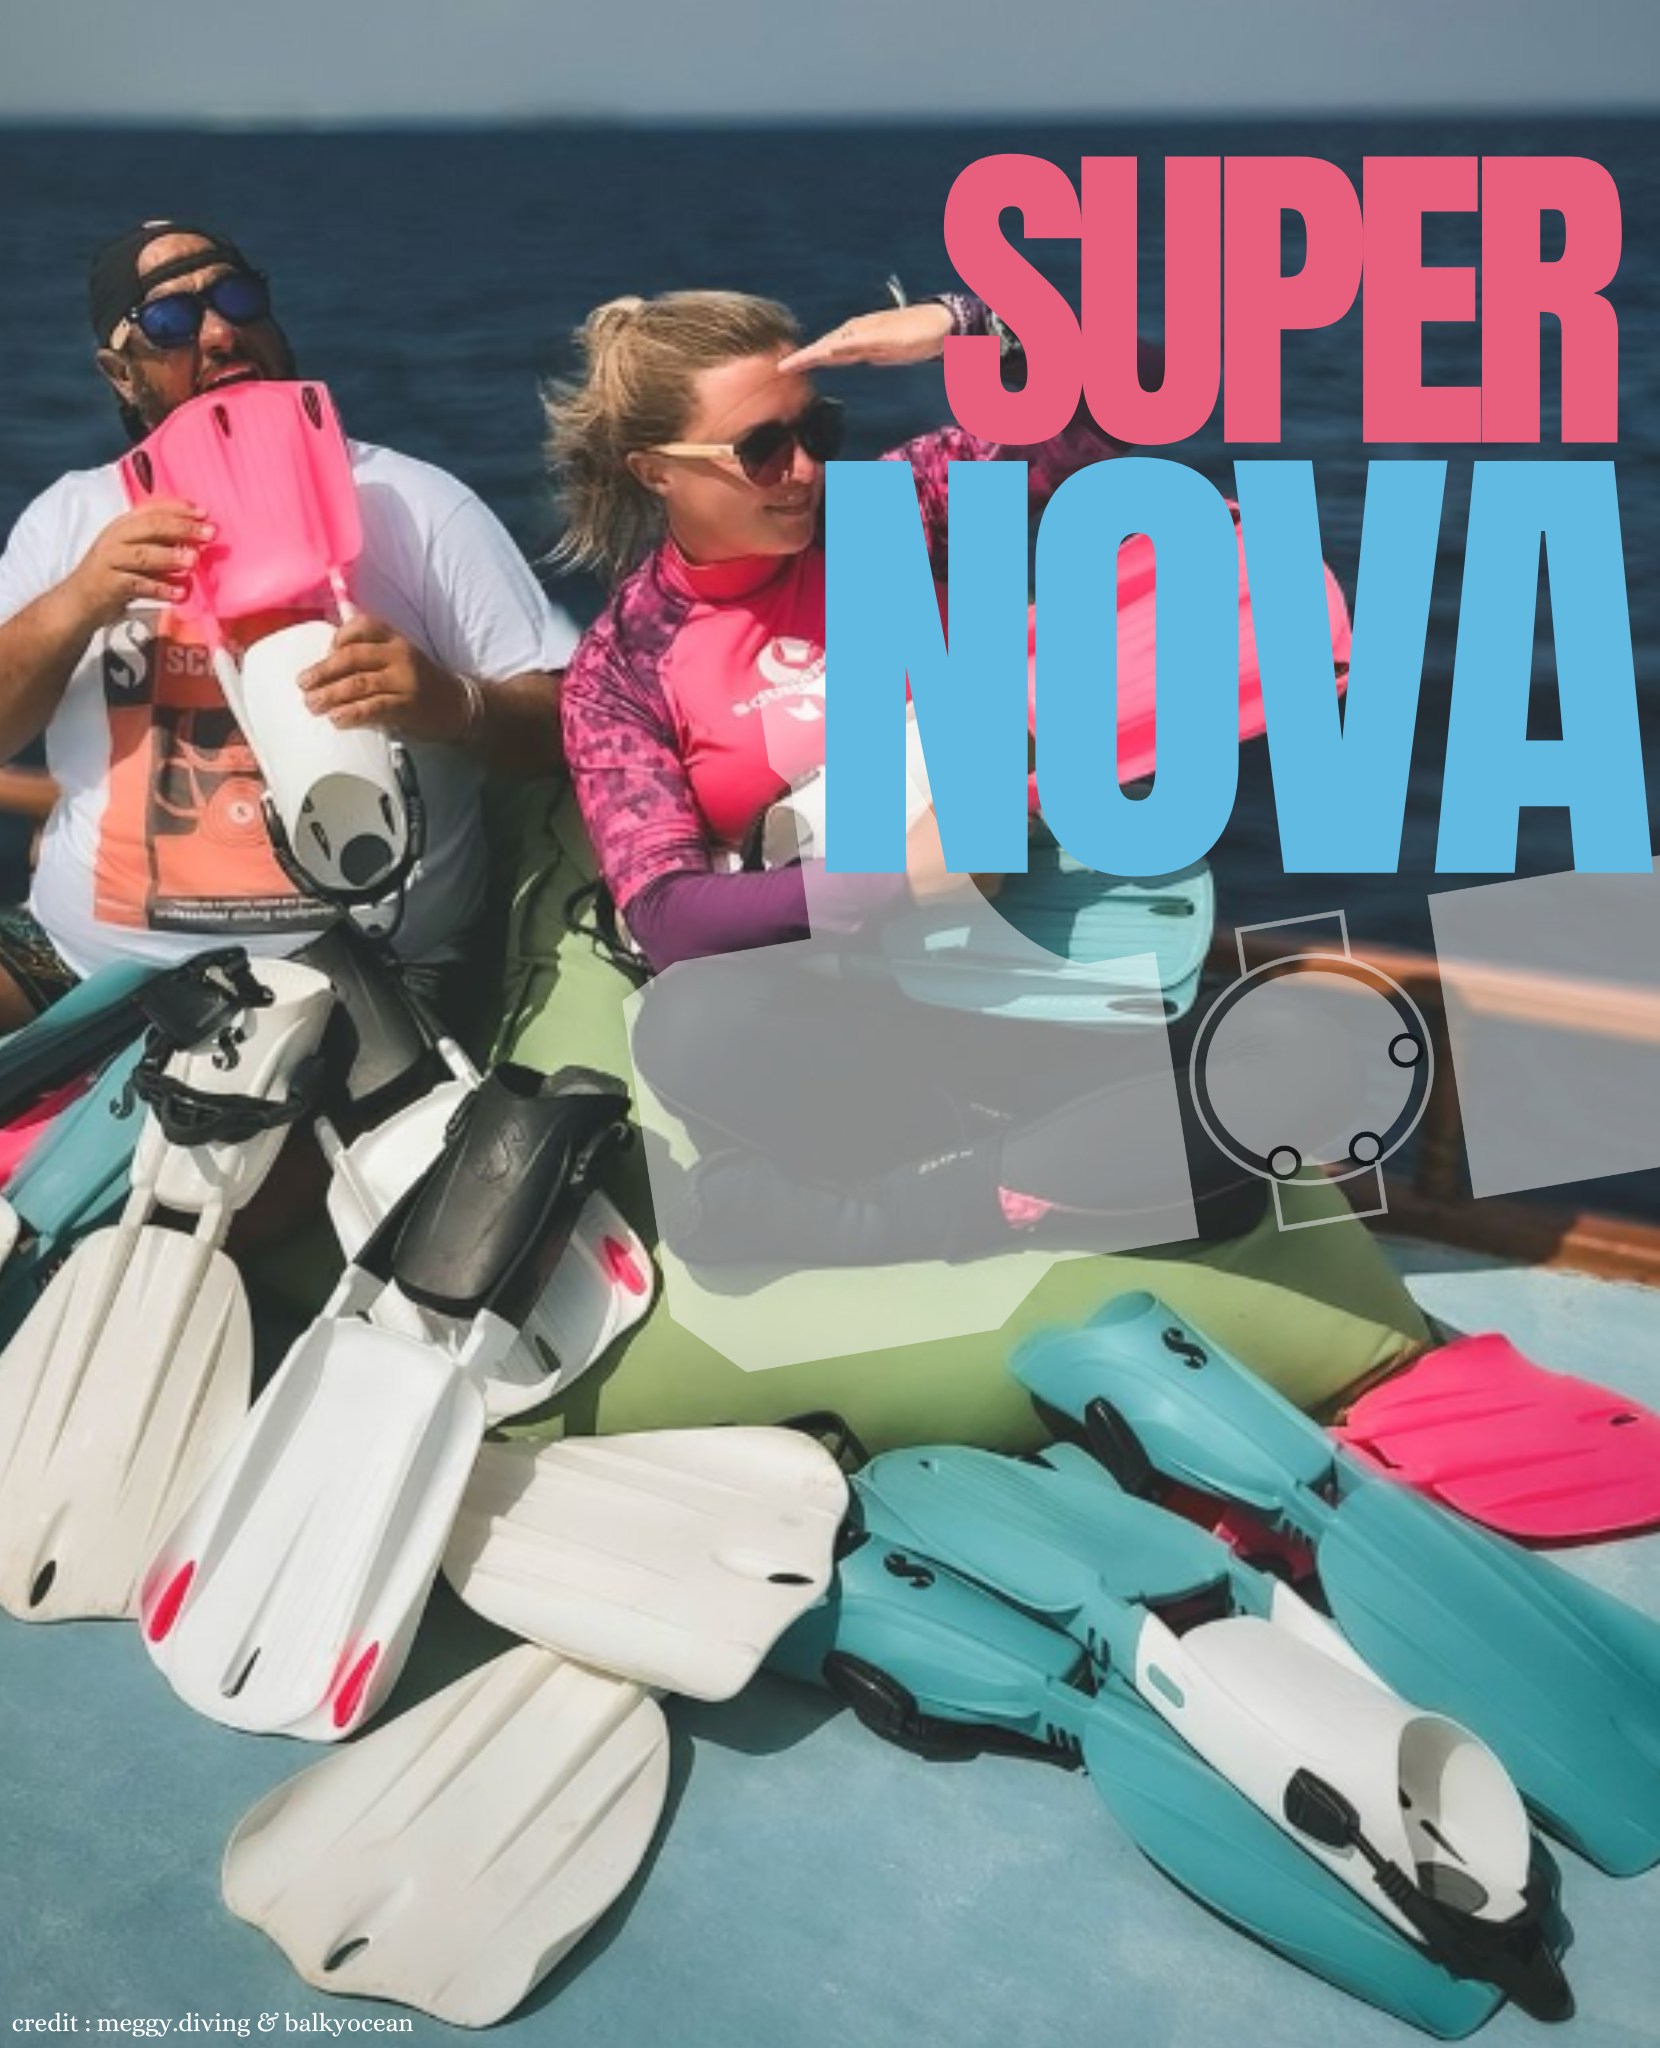 | NOUVEAUTE 📣🐙|
Les voilures Supernova sont désormais disponibles en 4 couleurs différentes ! 
Dites-nous en commentaire quel est votre couleur de voilure préférée 🧐
•
Disponible sur notre site 👉https://retoursurface.fr/magasin-de-materiel-de-plongee-sous-marine-/1444-11591-seawing-supernova-voilure-palme-scubapro.html#/31-couleur-bleu/597-dimension-petite
•
#scubaa #scubalife #scubadive #scubaworld #scubadiver #scubaphoto #scubadiving #scubadivers #scubaadventures #dive #diving #divinglife #plongée #plongeetechnique #plongeebouteille #plongéesousmarine #plongéesousmarine #mondesousmarin #shopping #waterproof #underwaterphotography #waterproofdiving #combinaison #combinaisonplongée #discount Scubapro @scubapro